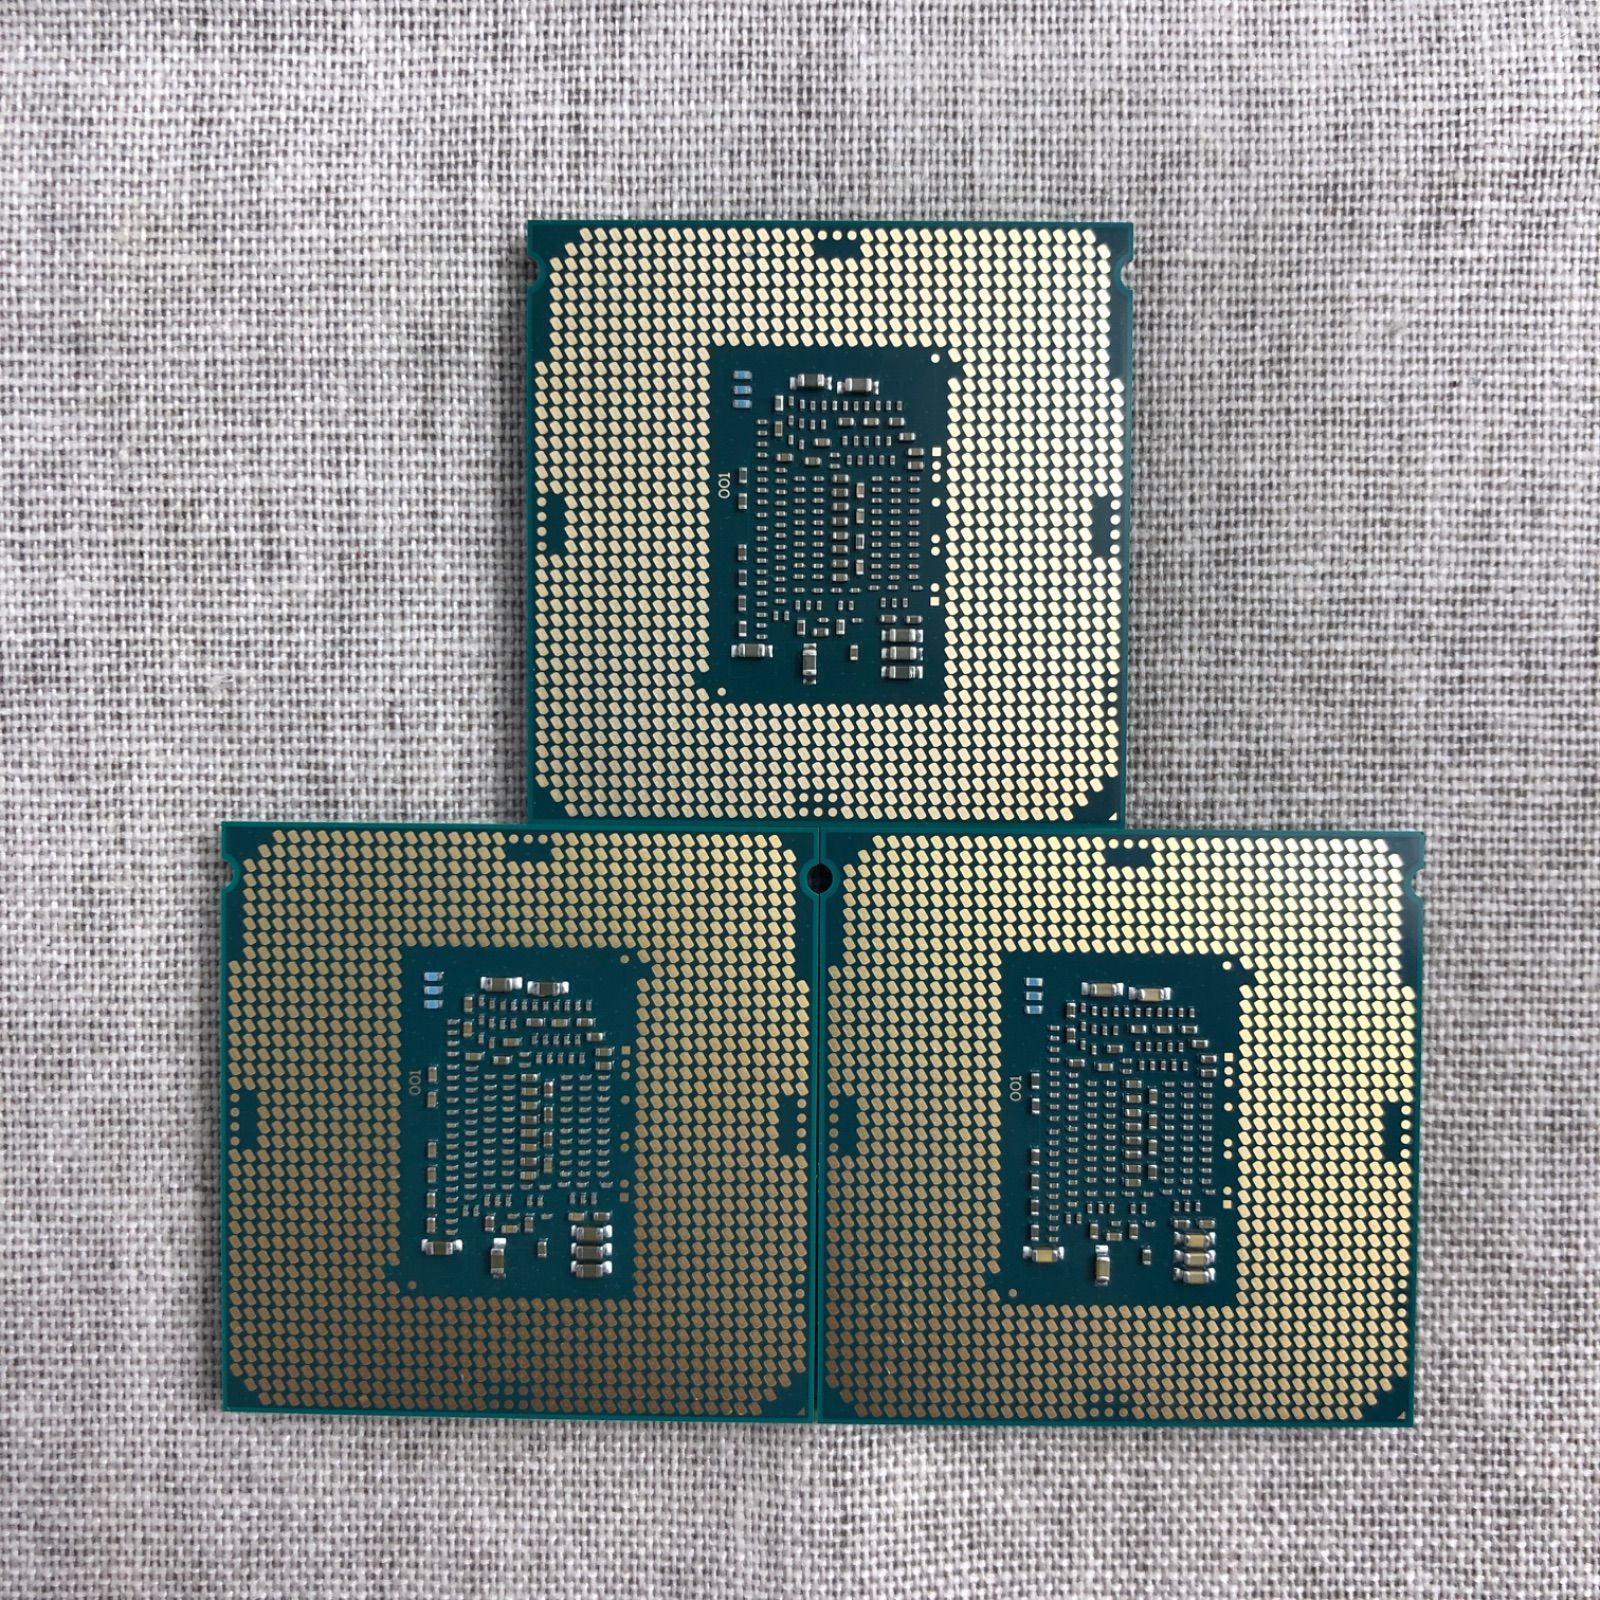 ３点セット】CPU Intel Core i7-6700【BIOS起動確認済】/CPU_M230108